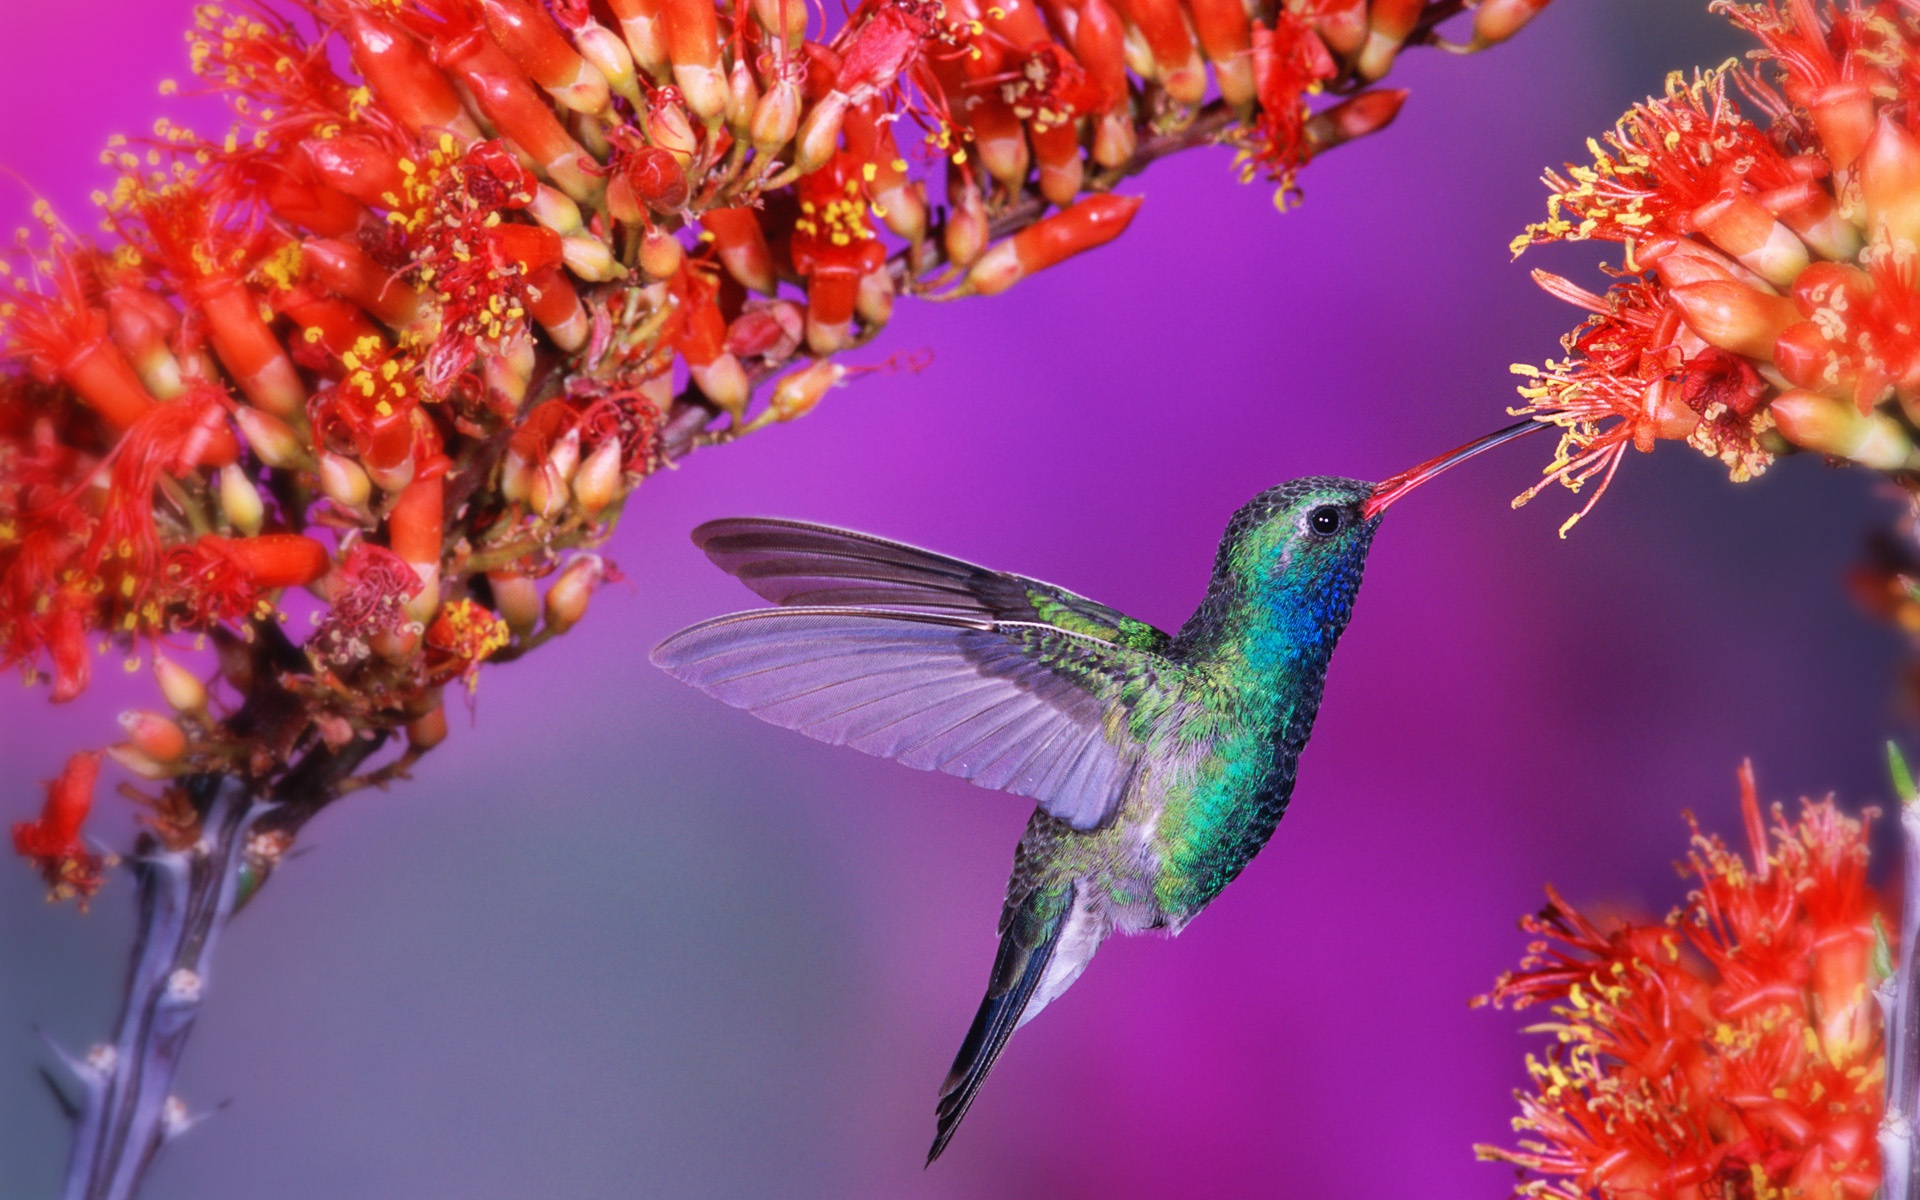 Wallpaper Of Hummingbird Puter Desktop Image